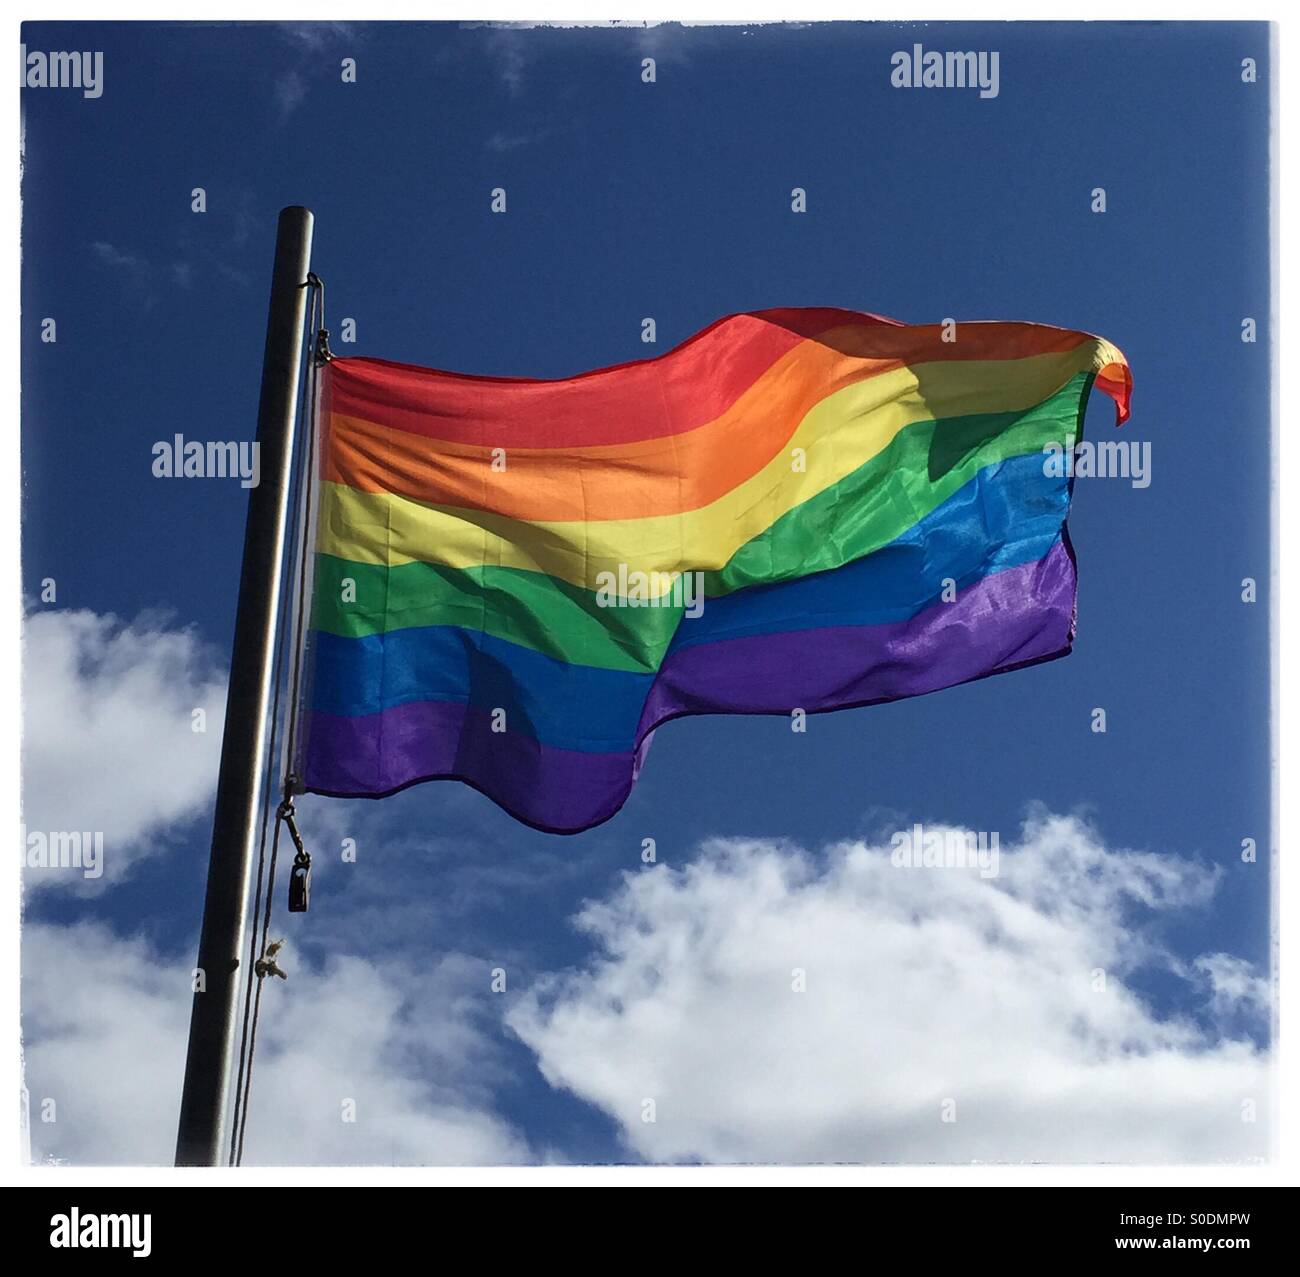 Drapeau Arc-en-ciel LGBT sur une breezy day, USA, le 24 avril 2015, © Katharine Andriotis Banque D'Images